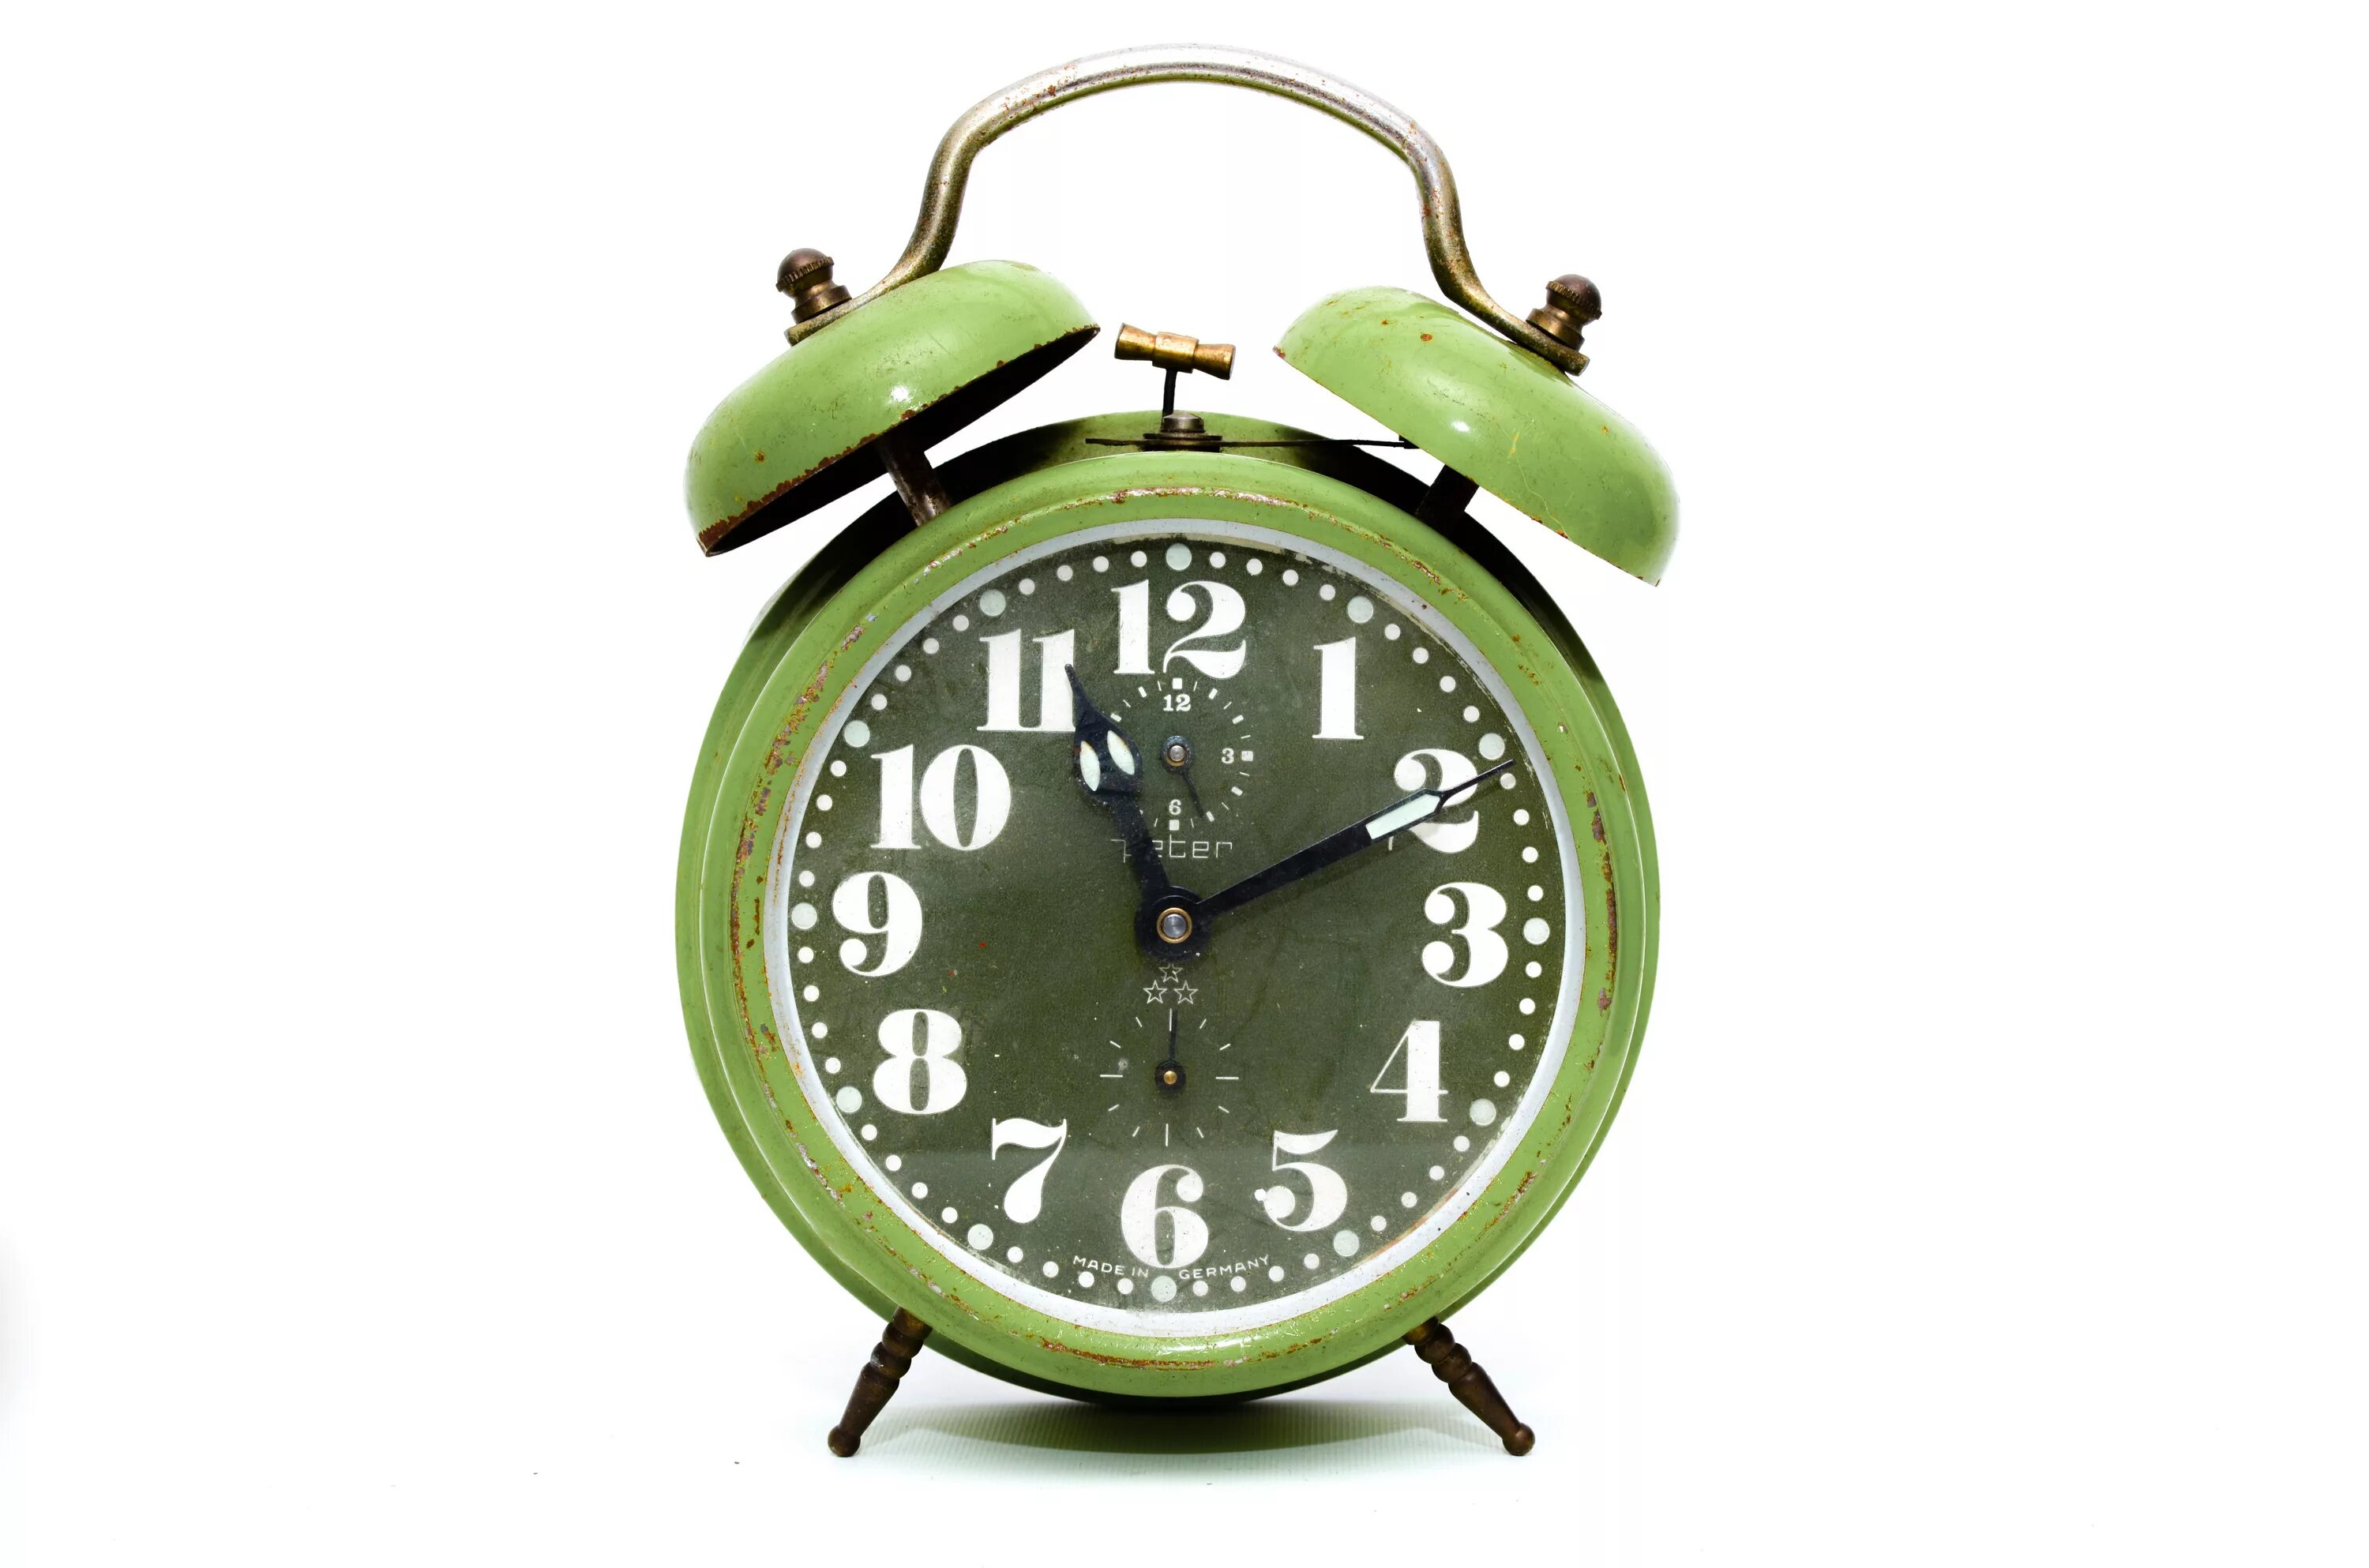 Будильник Аларм клок. Старые часы будильник. Часы настольные зеленые. Винтажный будильник. Будильник 15 часов